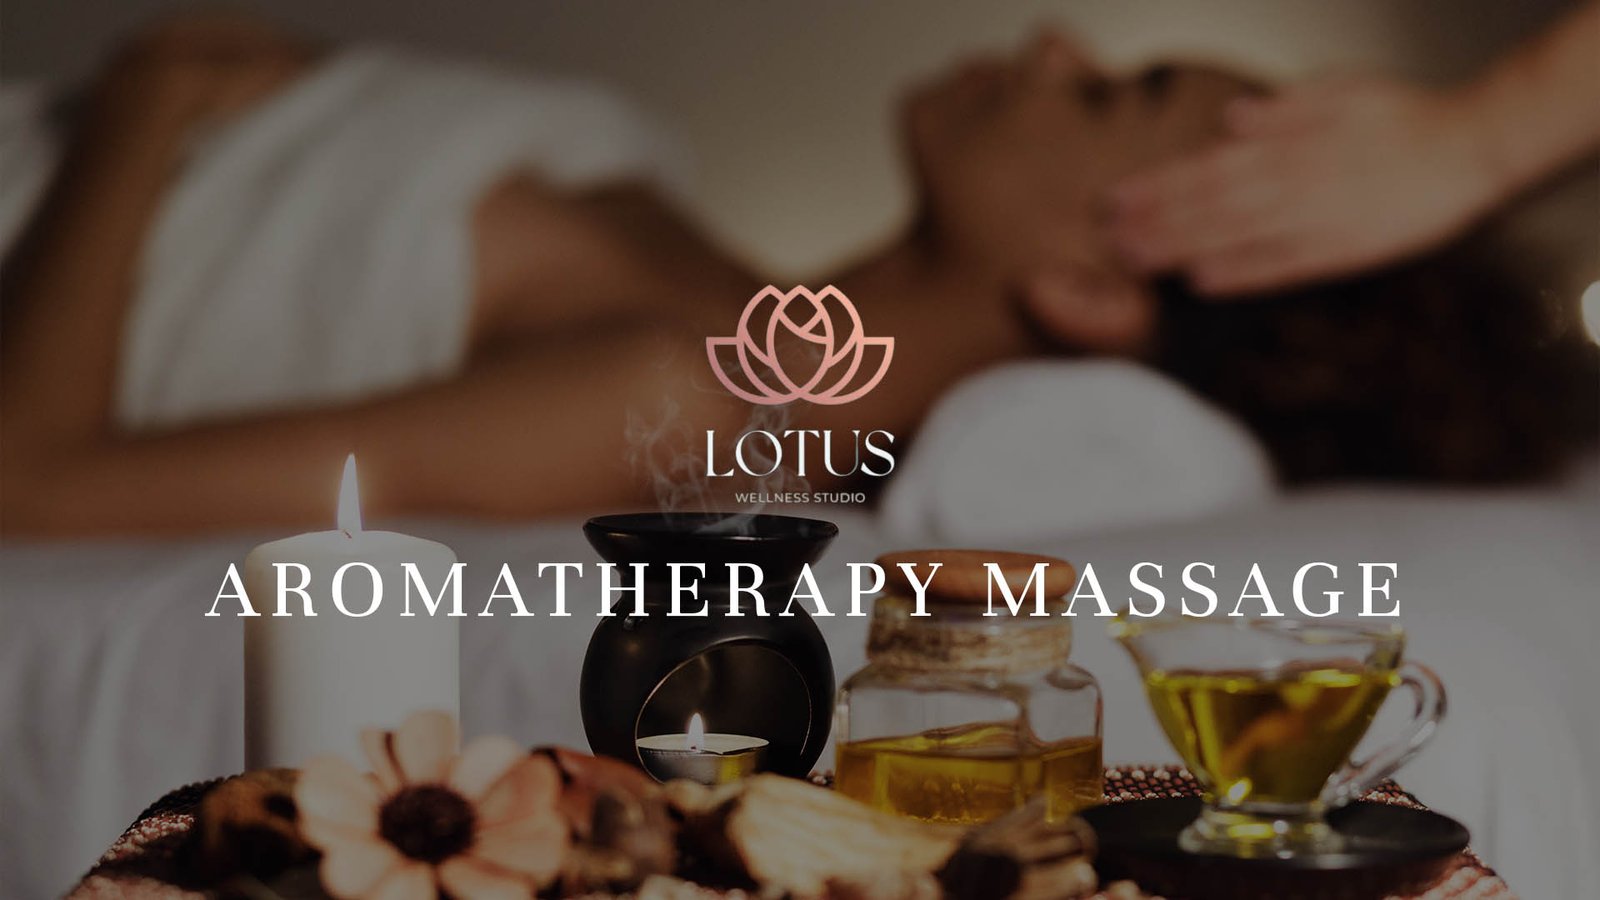 6. Aromatherapy Massage